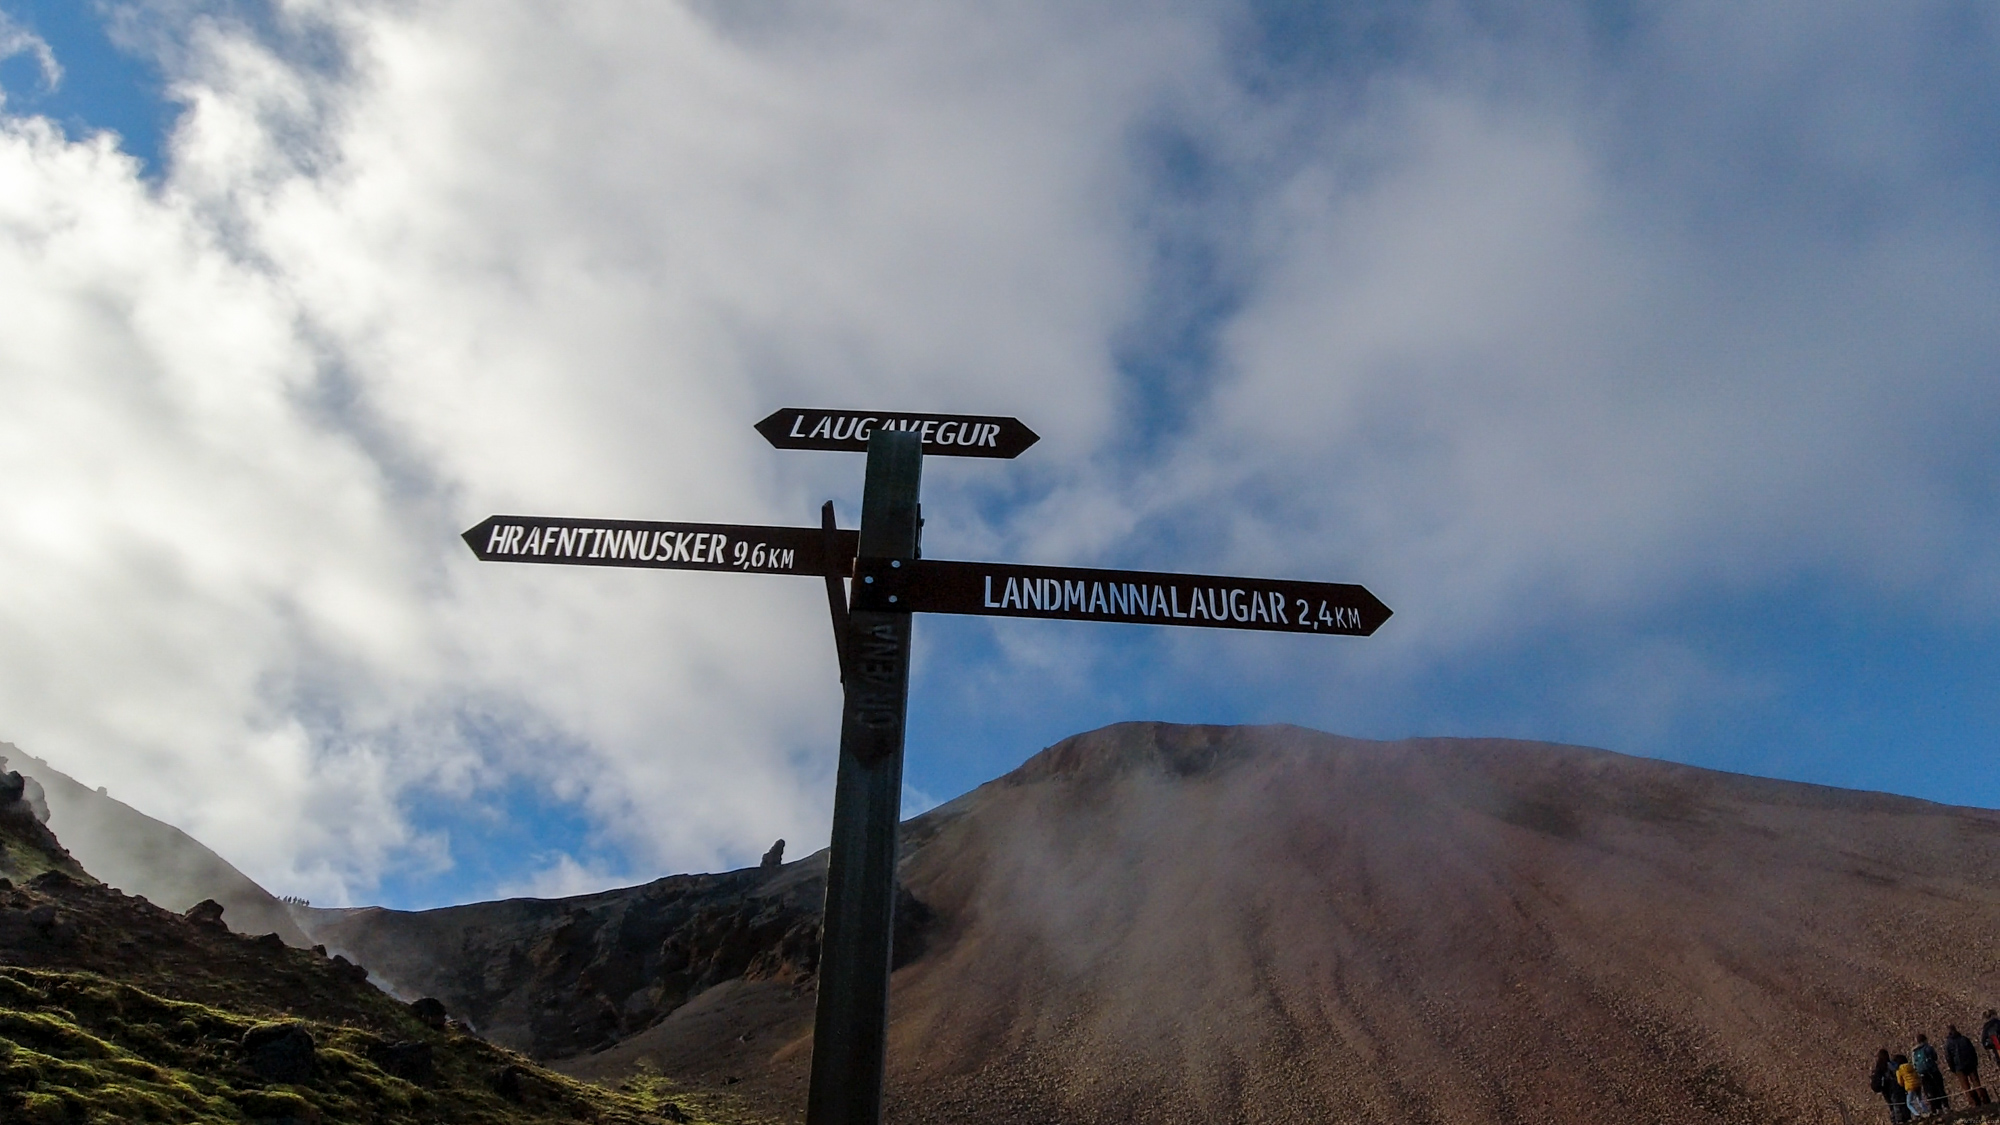 Časť cesty vedie po známej trialovej ceste Laugavegur, ktorá spája Landmannalaugar a Þórsmörk.